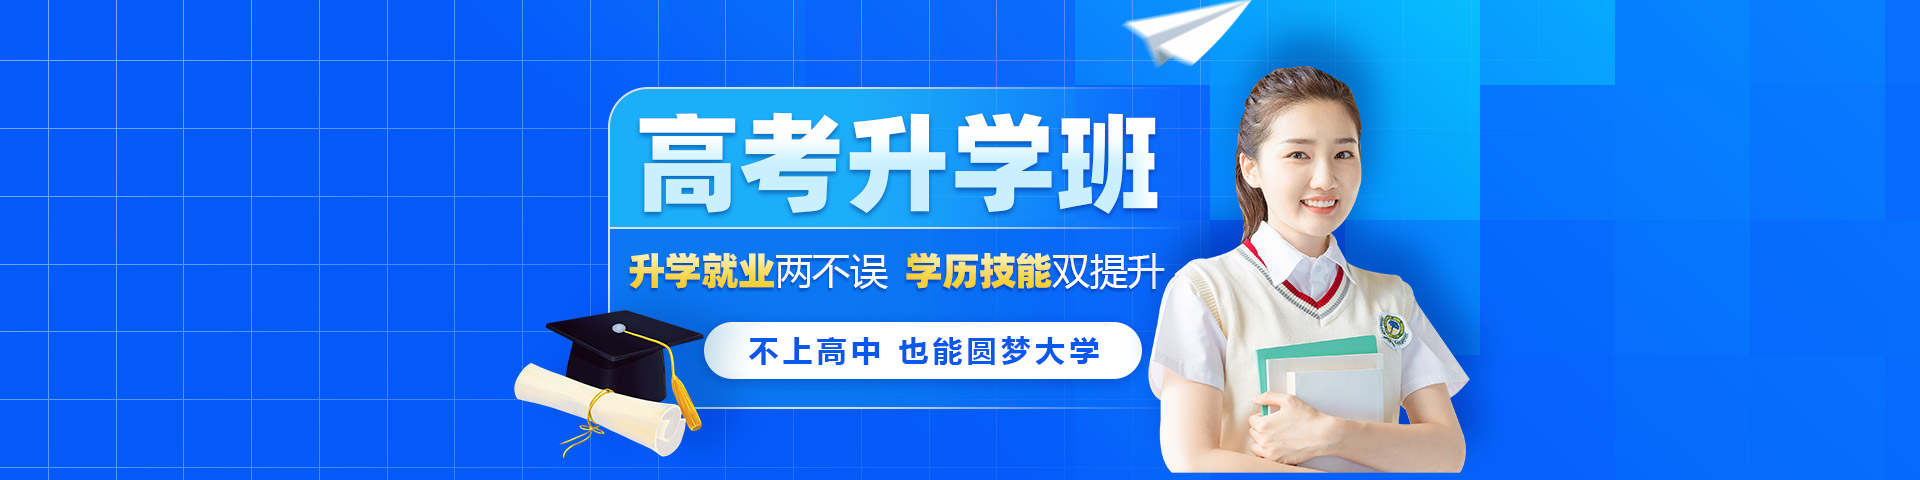 2022高考升学班-重庆新华电脑学校招生